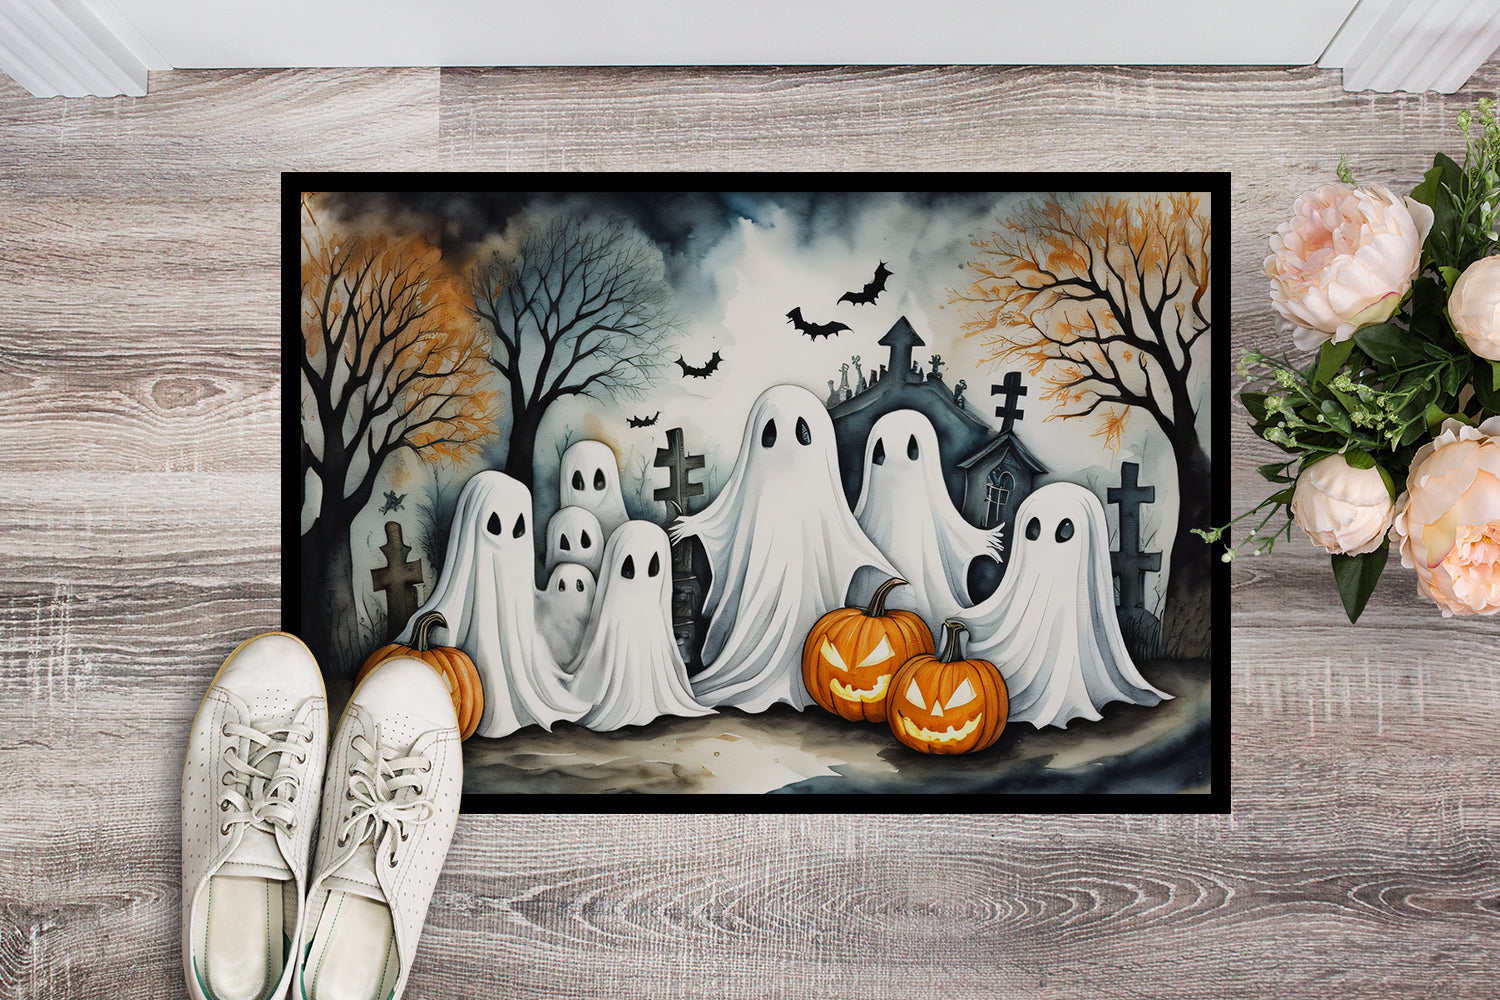 Buy this Ghosts Spooky Halloween Indoor or Outdoor Mat 24x36